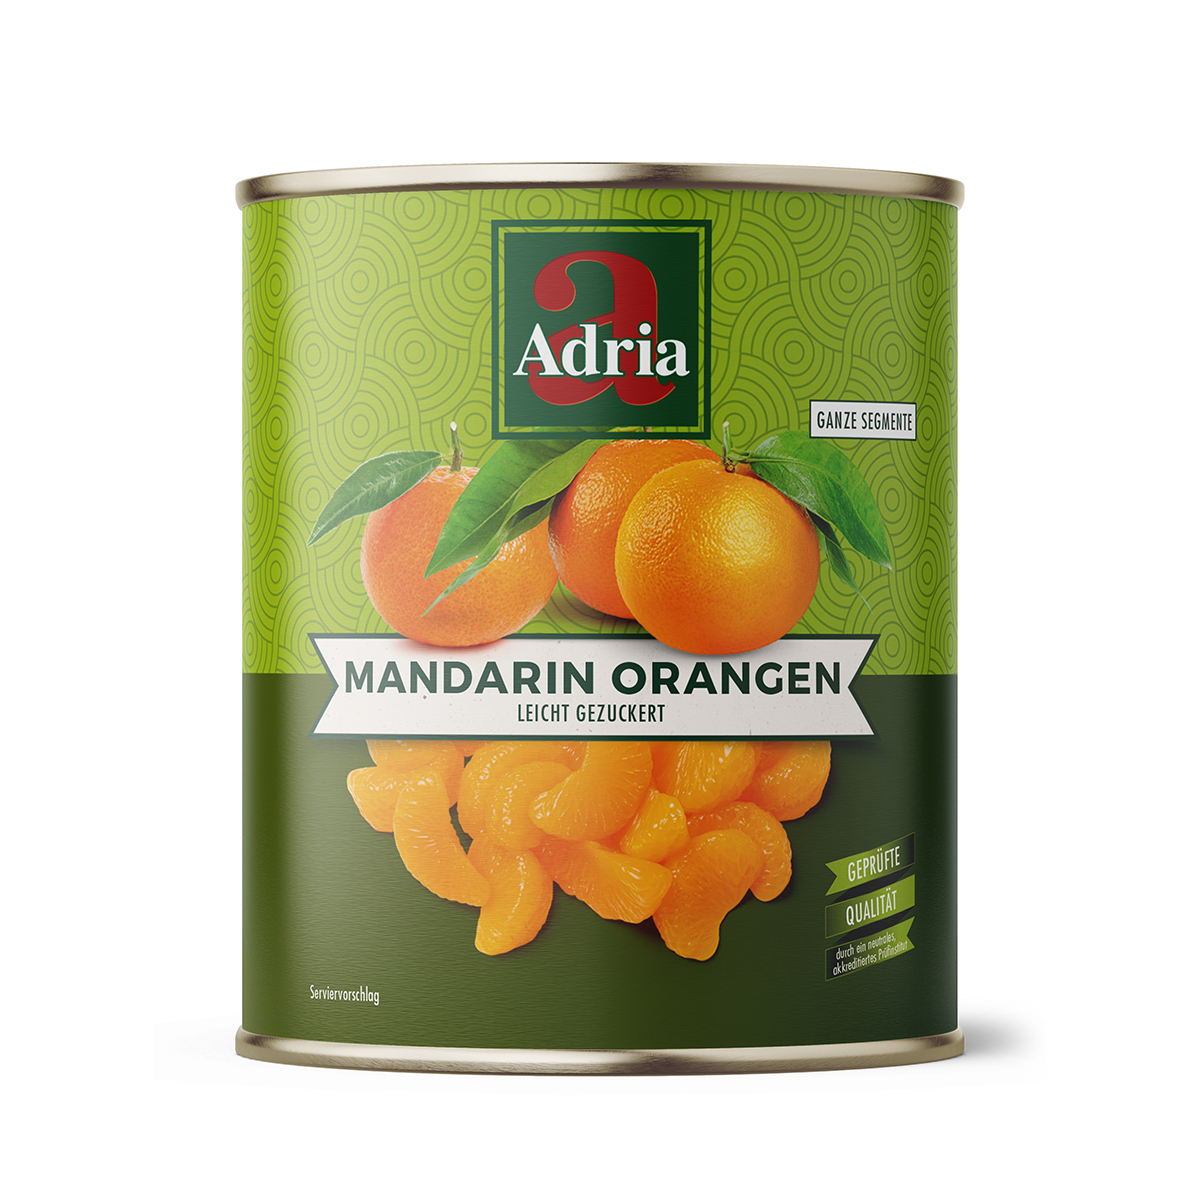 Mandarin-Orangen ganze Segmente leicht gezuckert 850ml